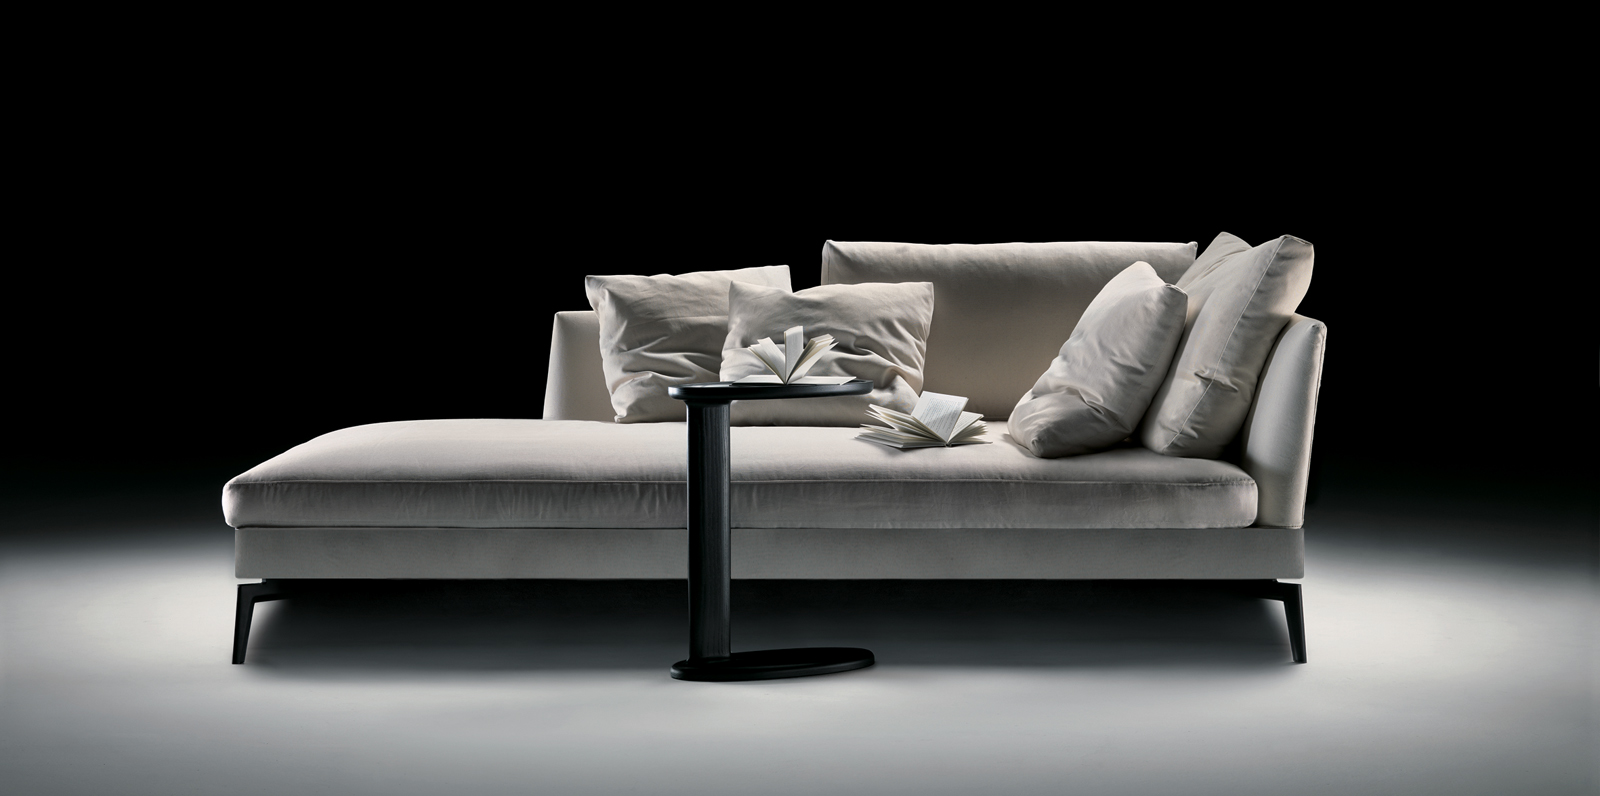 奢侈品家居 现代简约 FLEXFORM FEELGOOD 沙发 面料规格颜色可定制 高端家具